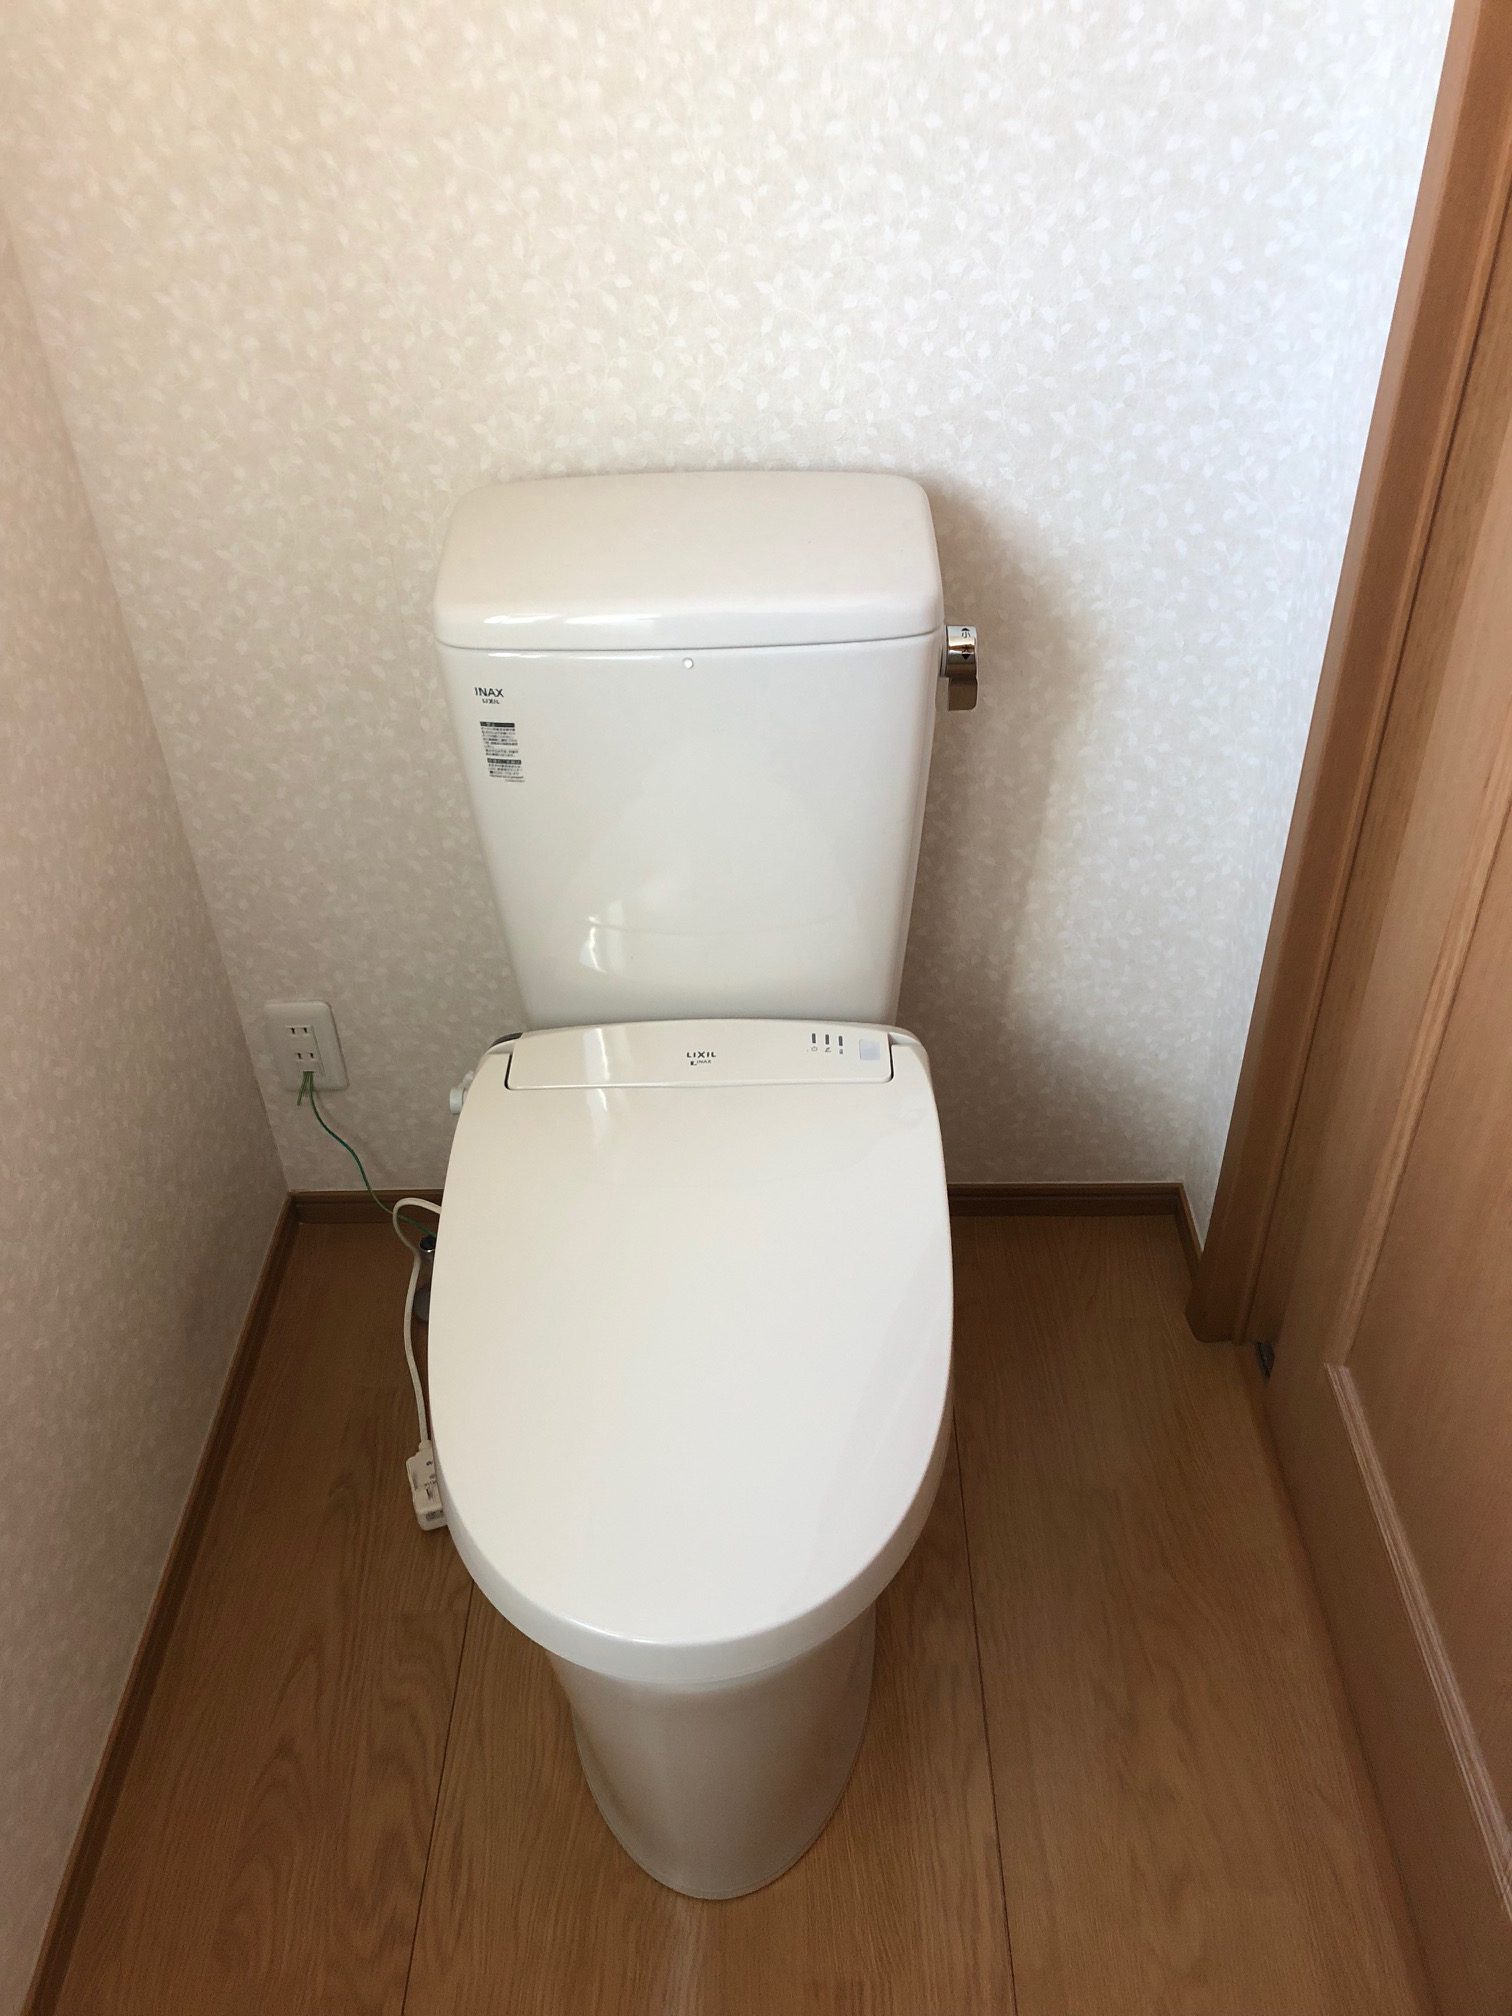 姫路市 トイレ水漏れで交換 株式会社オレンジナイト（ORANGE KNIGHT）